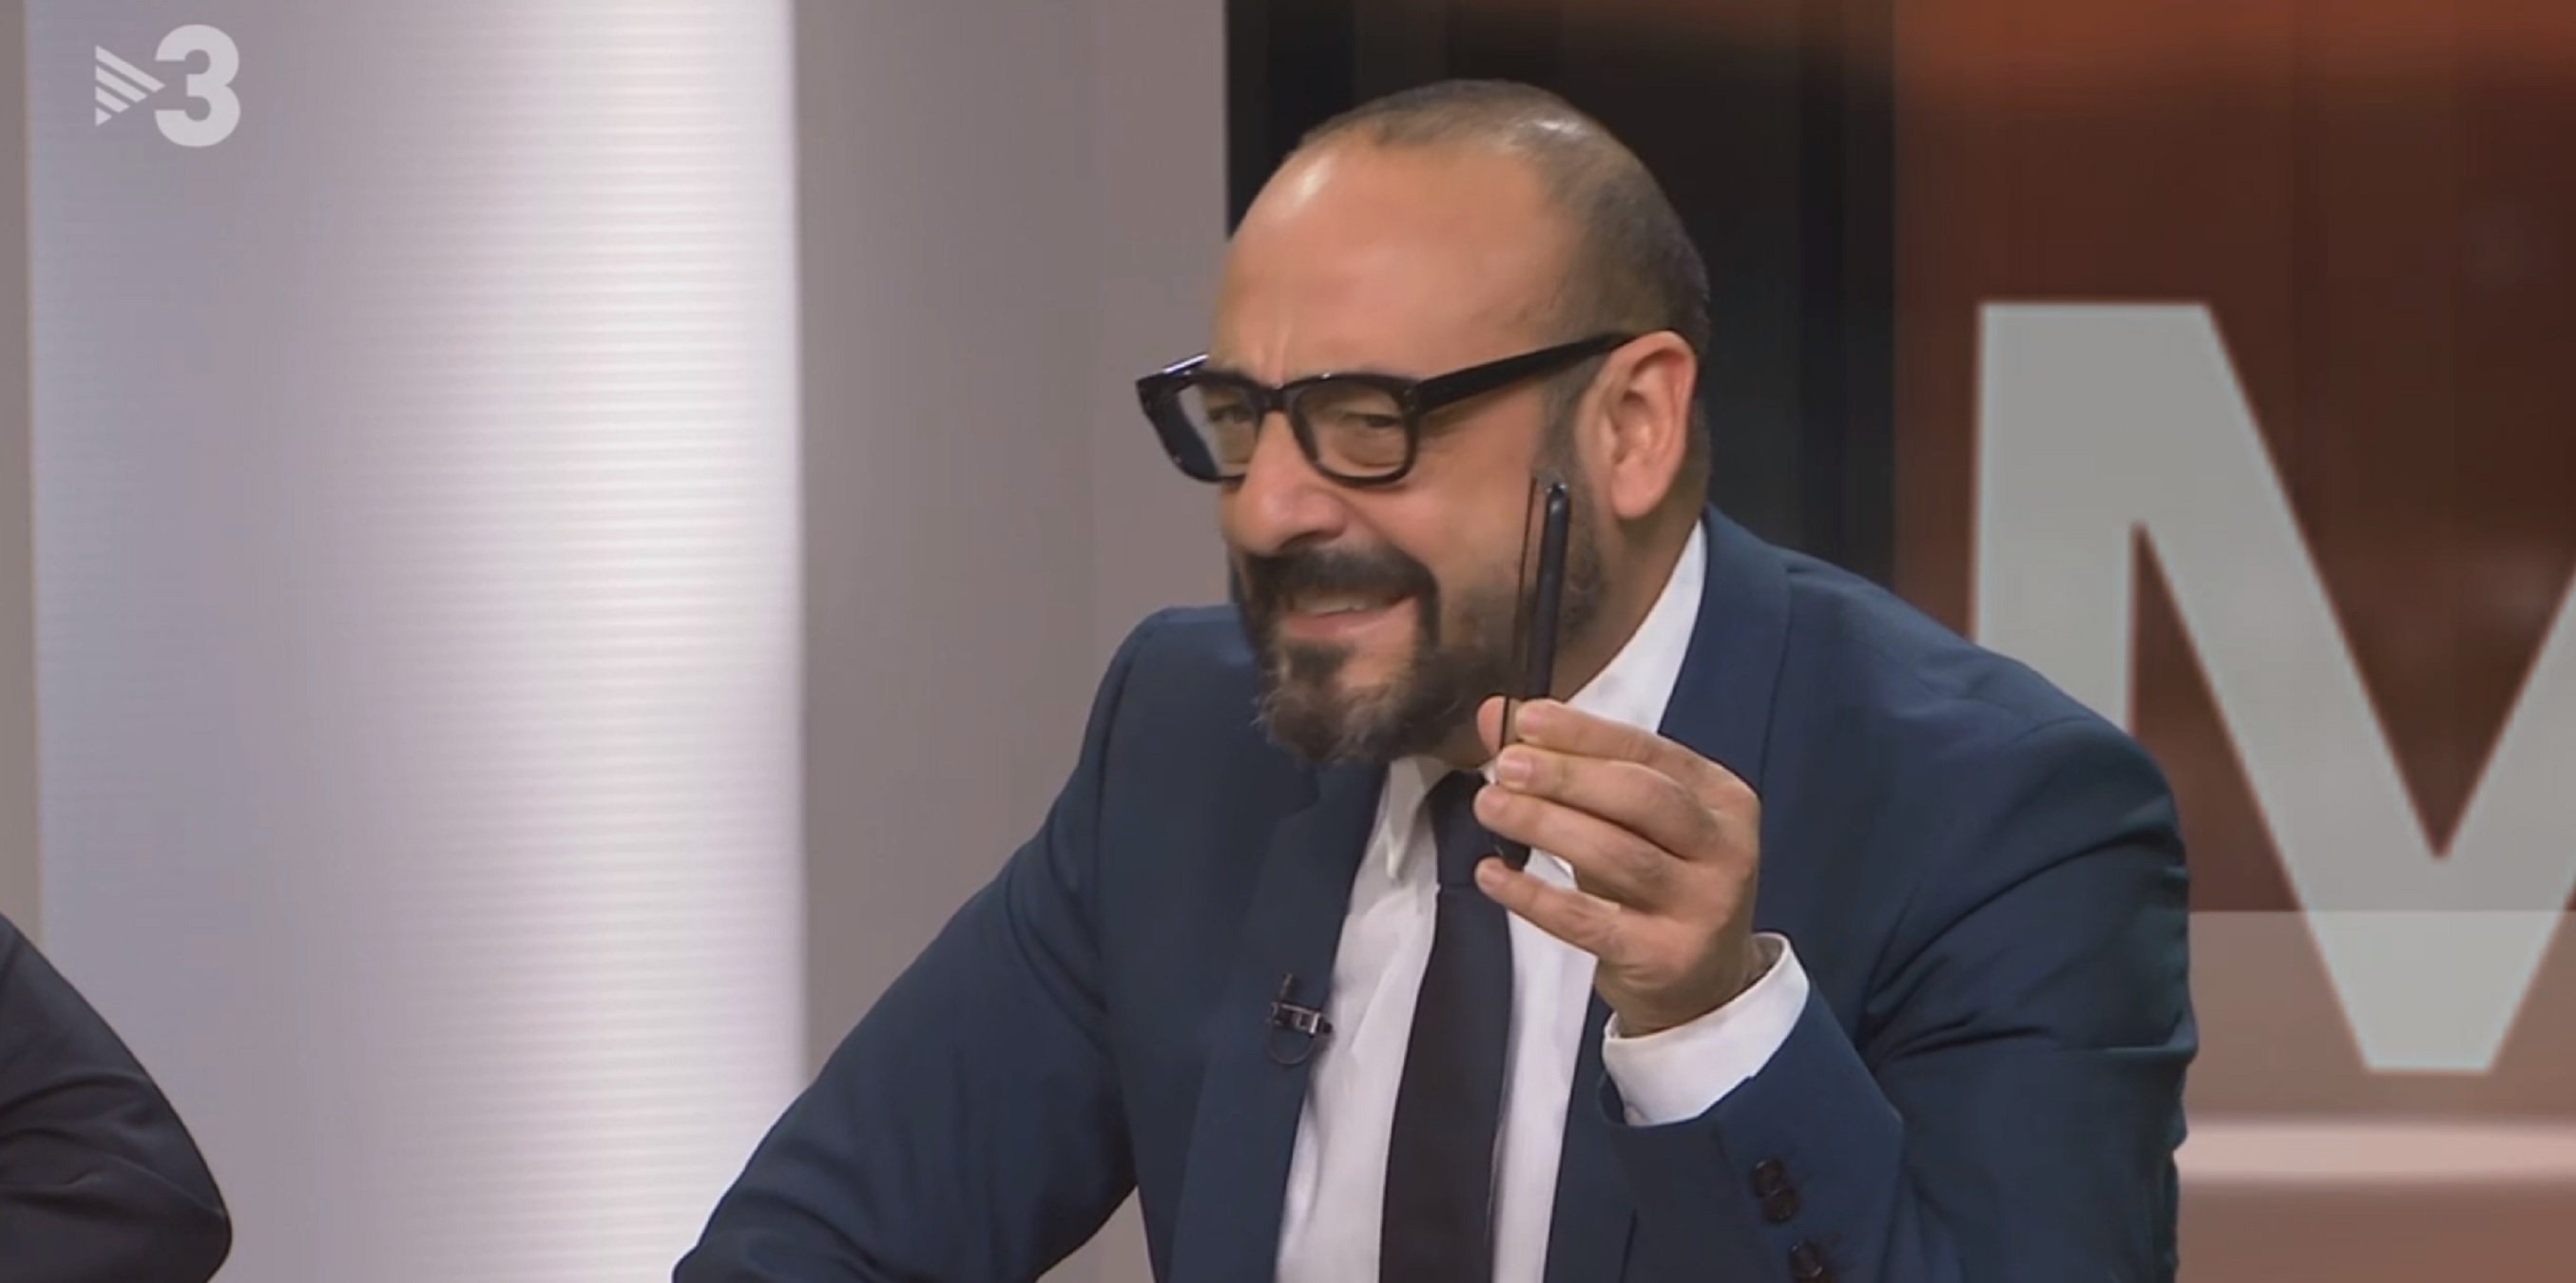 Insults, tensió i crits durant el debat amb Jordi Cañas a TV3: "lerdos cebúes"